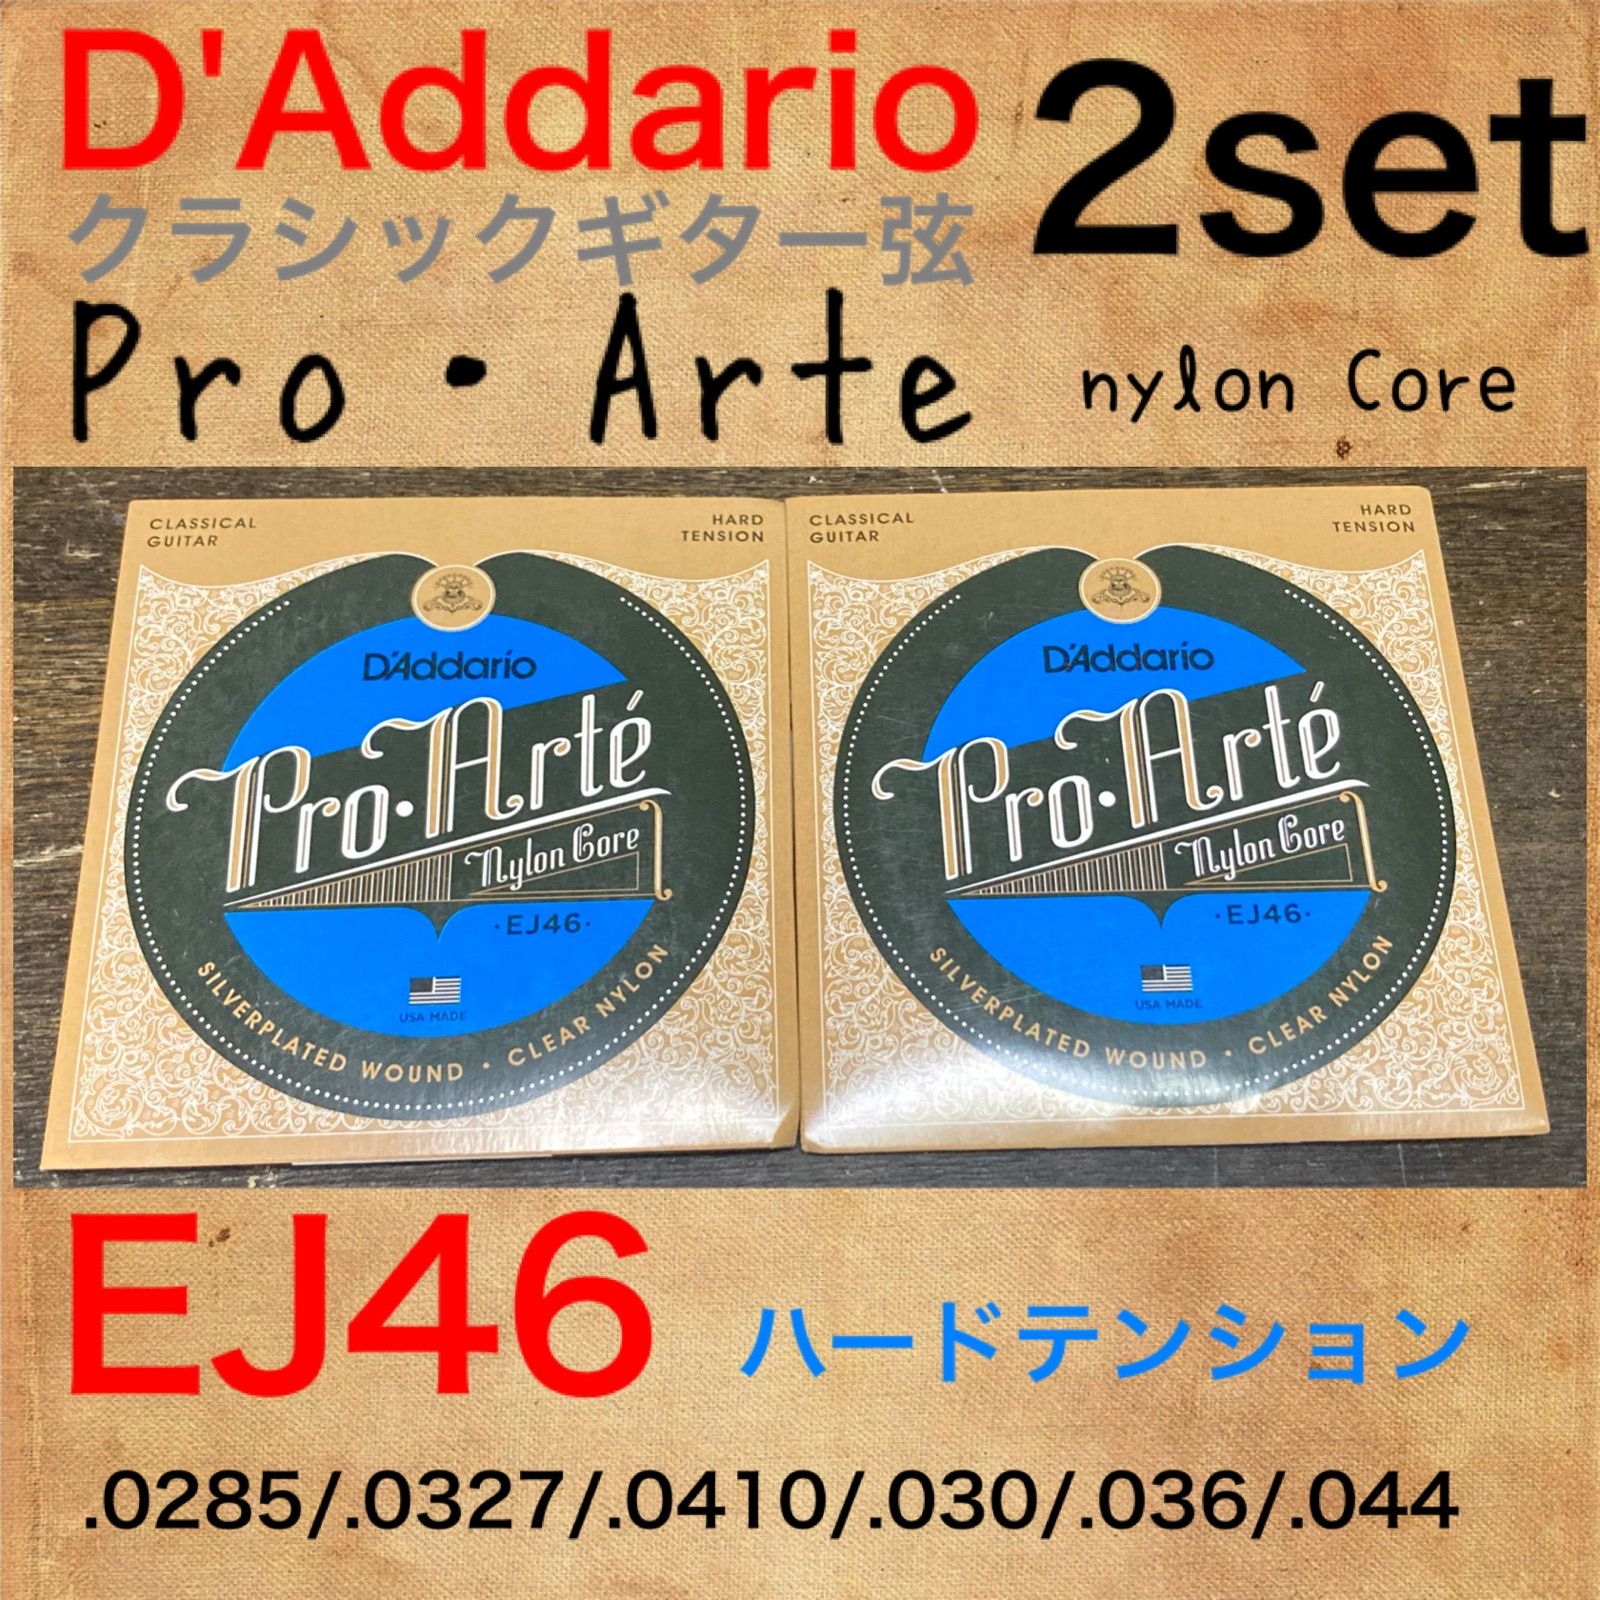 6セット D'Addario CBH-3T Carbon Hard Trebles Half Set ダダリオ クラシック弦 高音弦ハーフセット